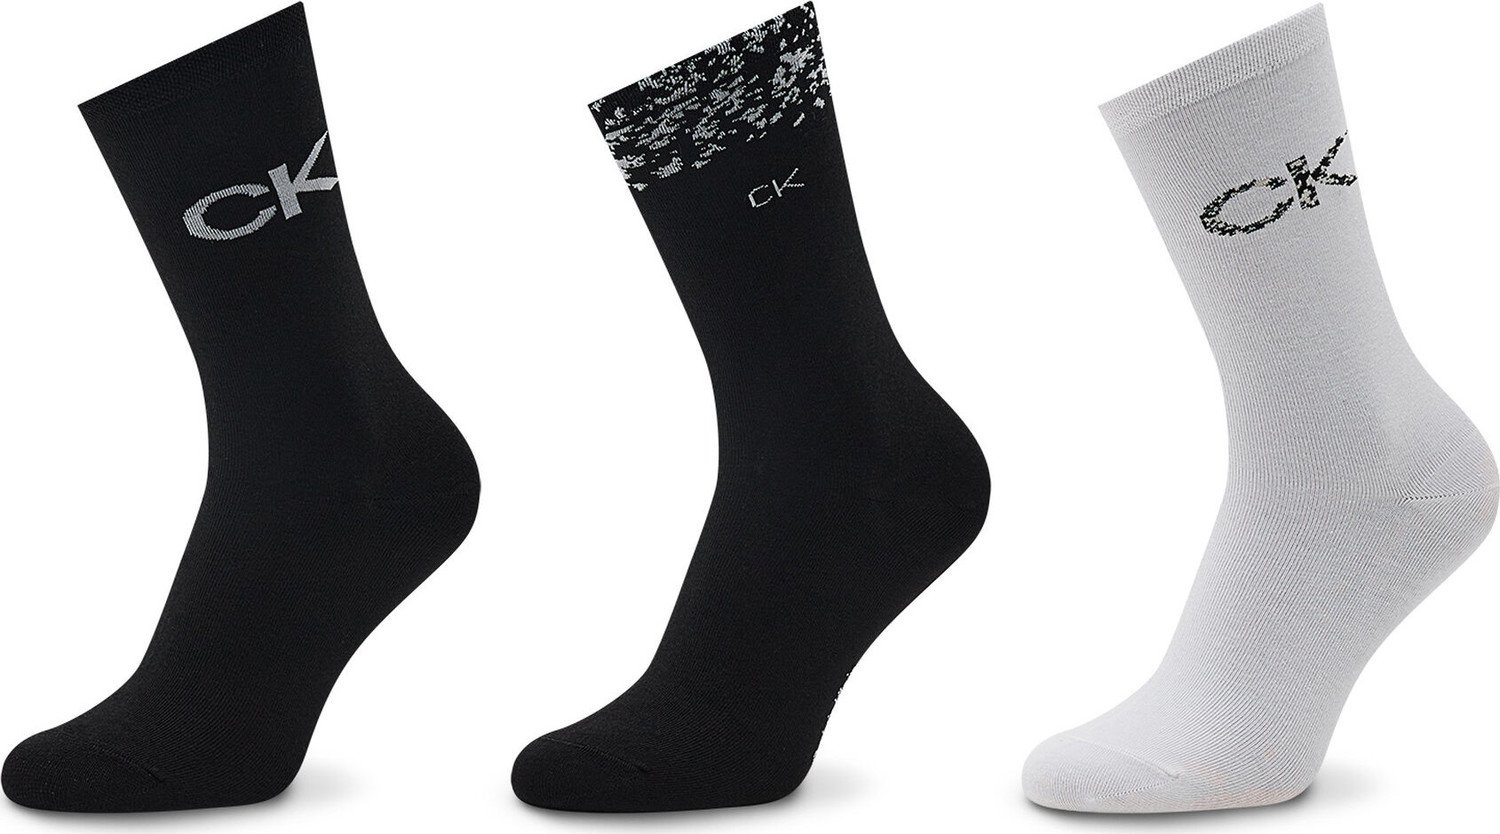 Sada 3 párů dámských vysokých ponožek Calvin Klein 701219849 Black 002